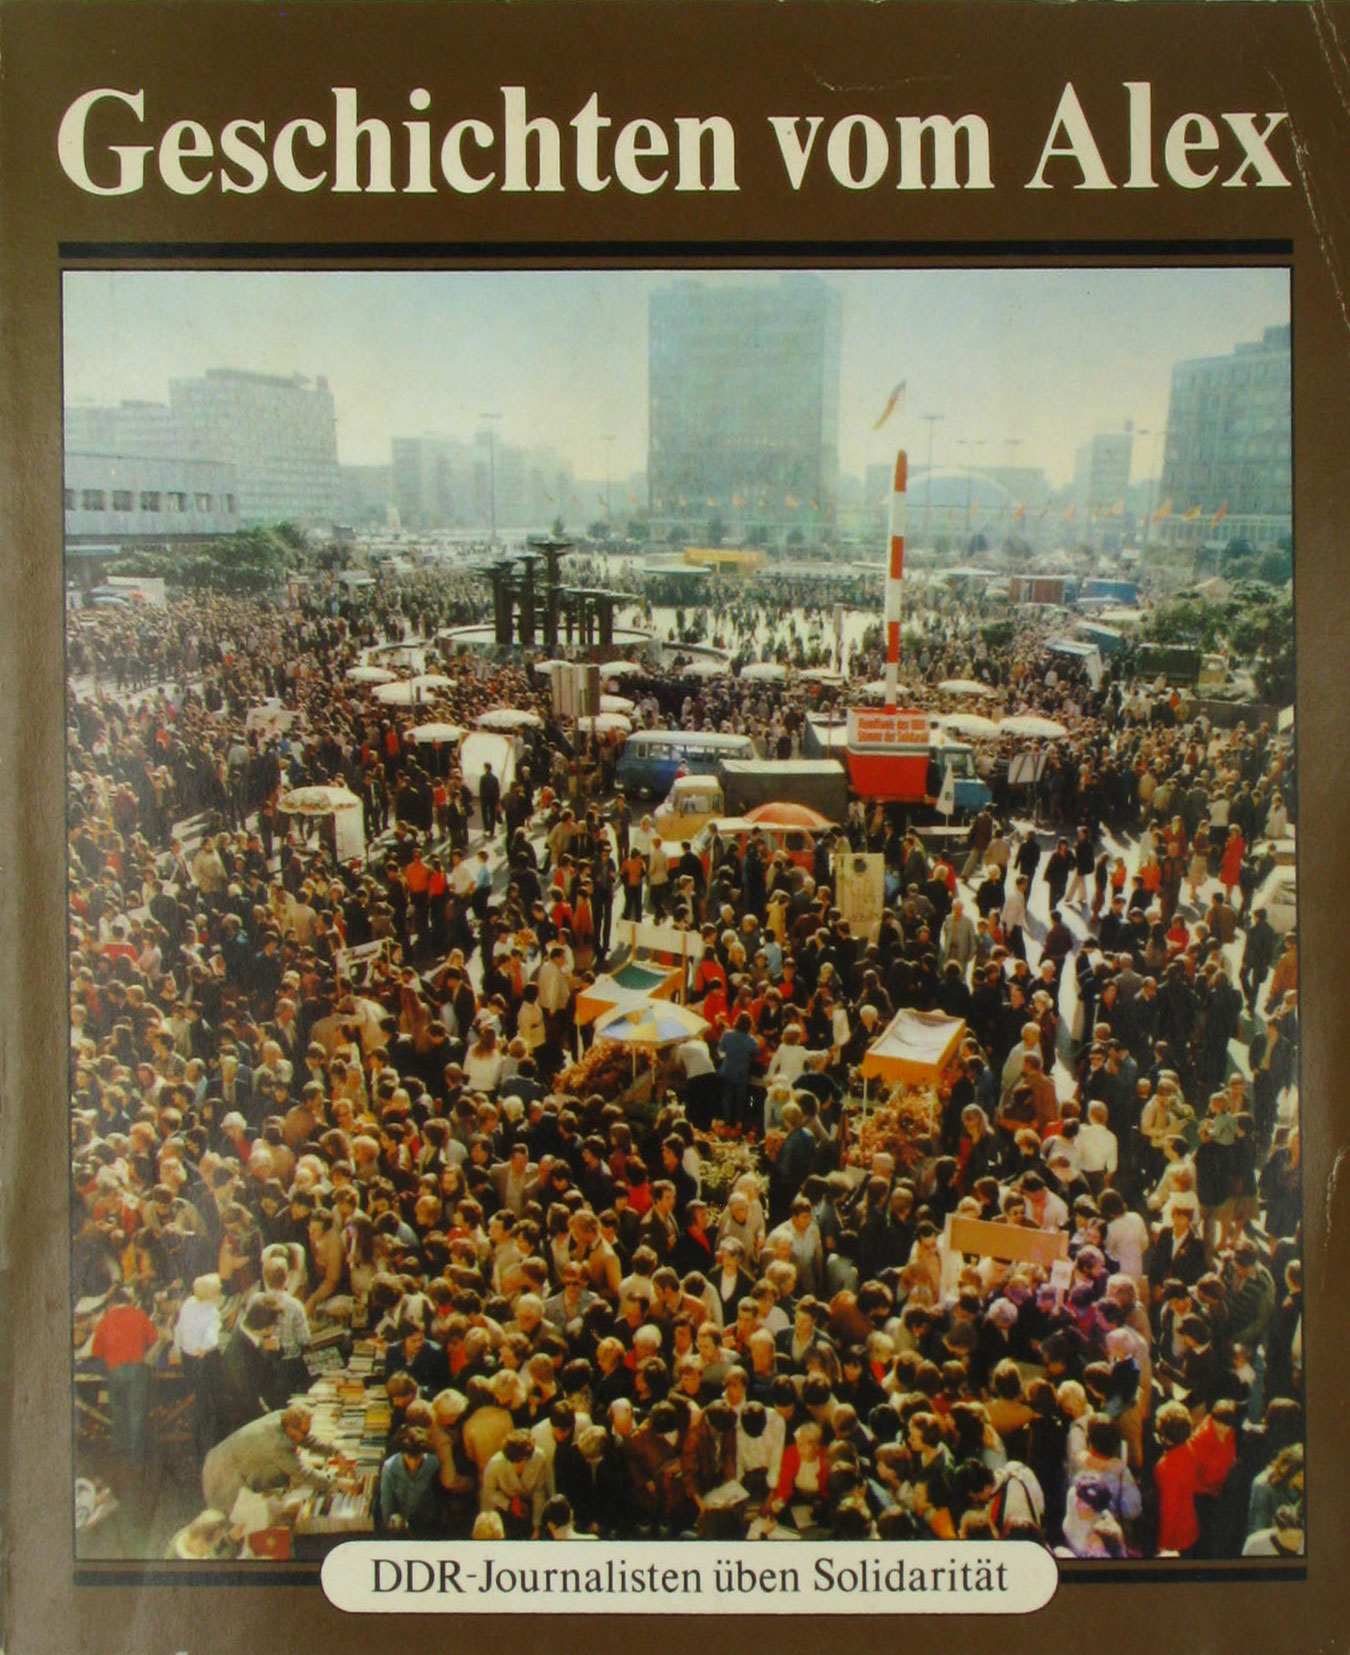 Autorenkollektiv:  Geschichten vom Alex. DDR-Journalisten üben Solidarität. 